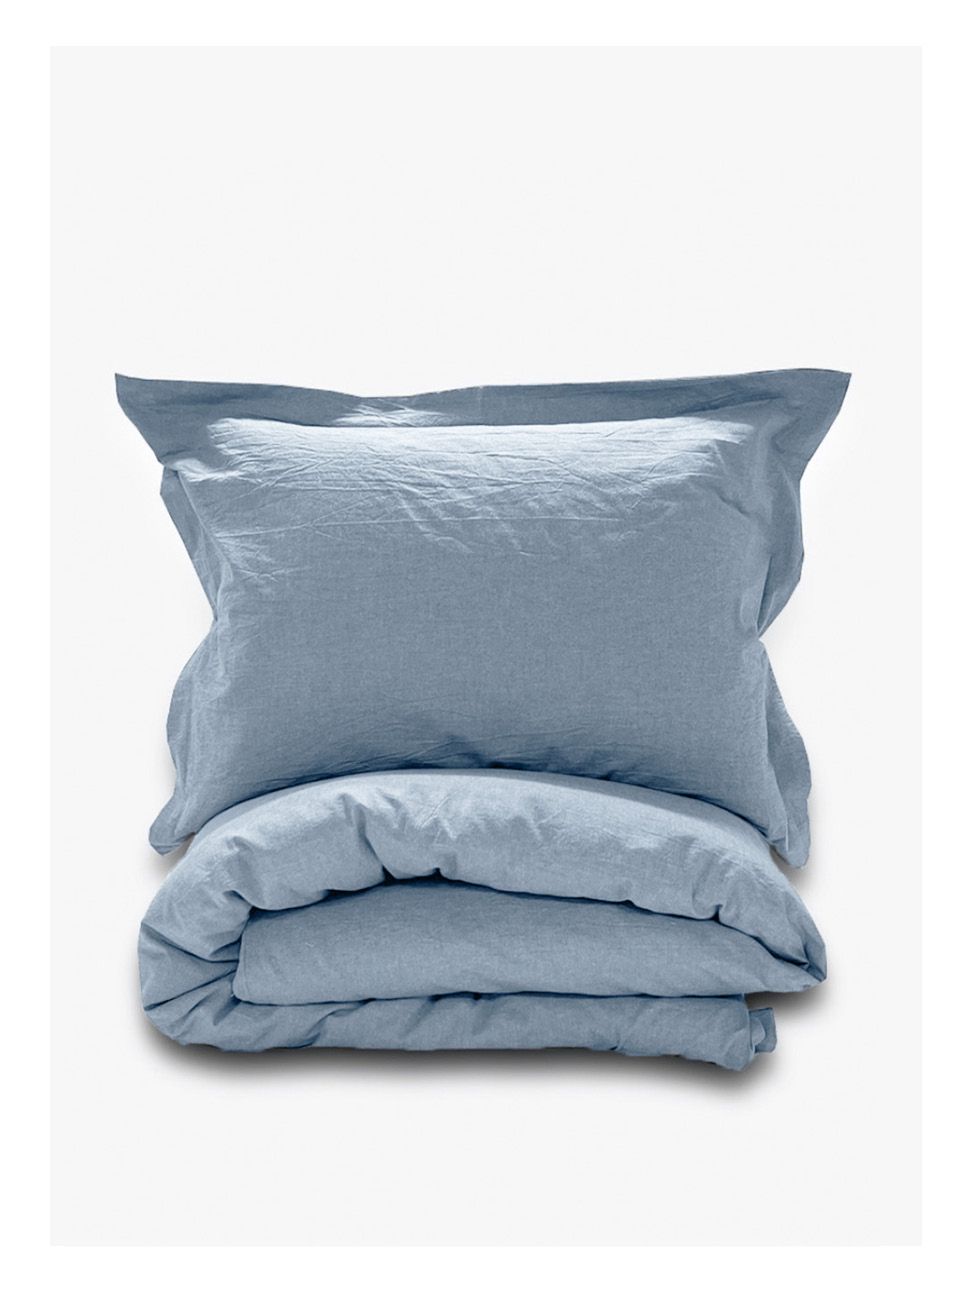 Комплект постельного белья Евро компплект Loft Light-blue melange